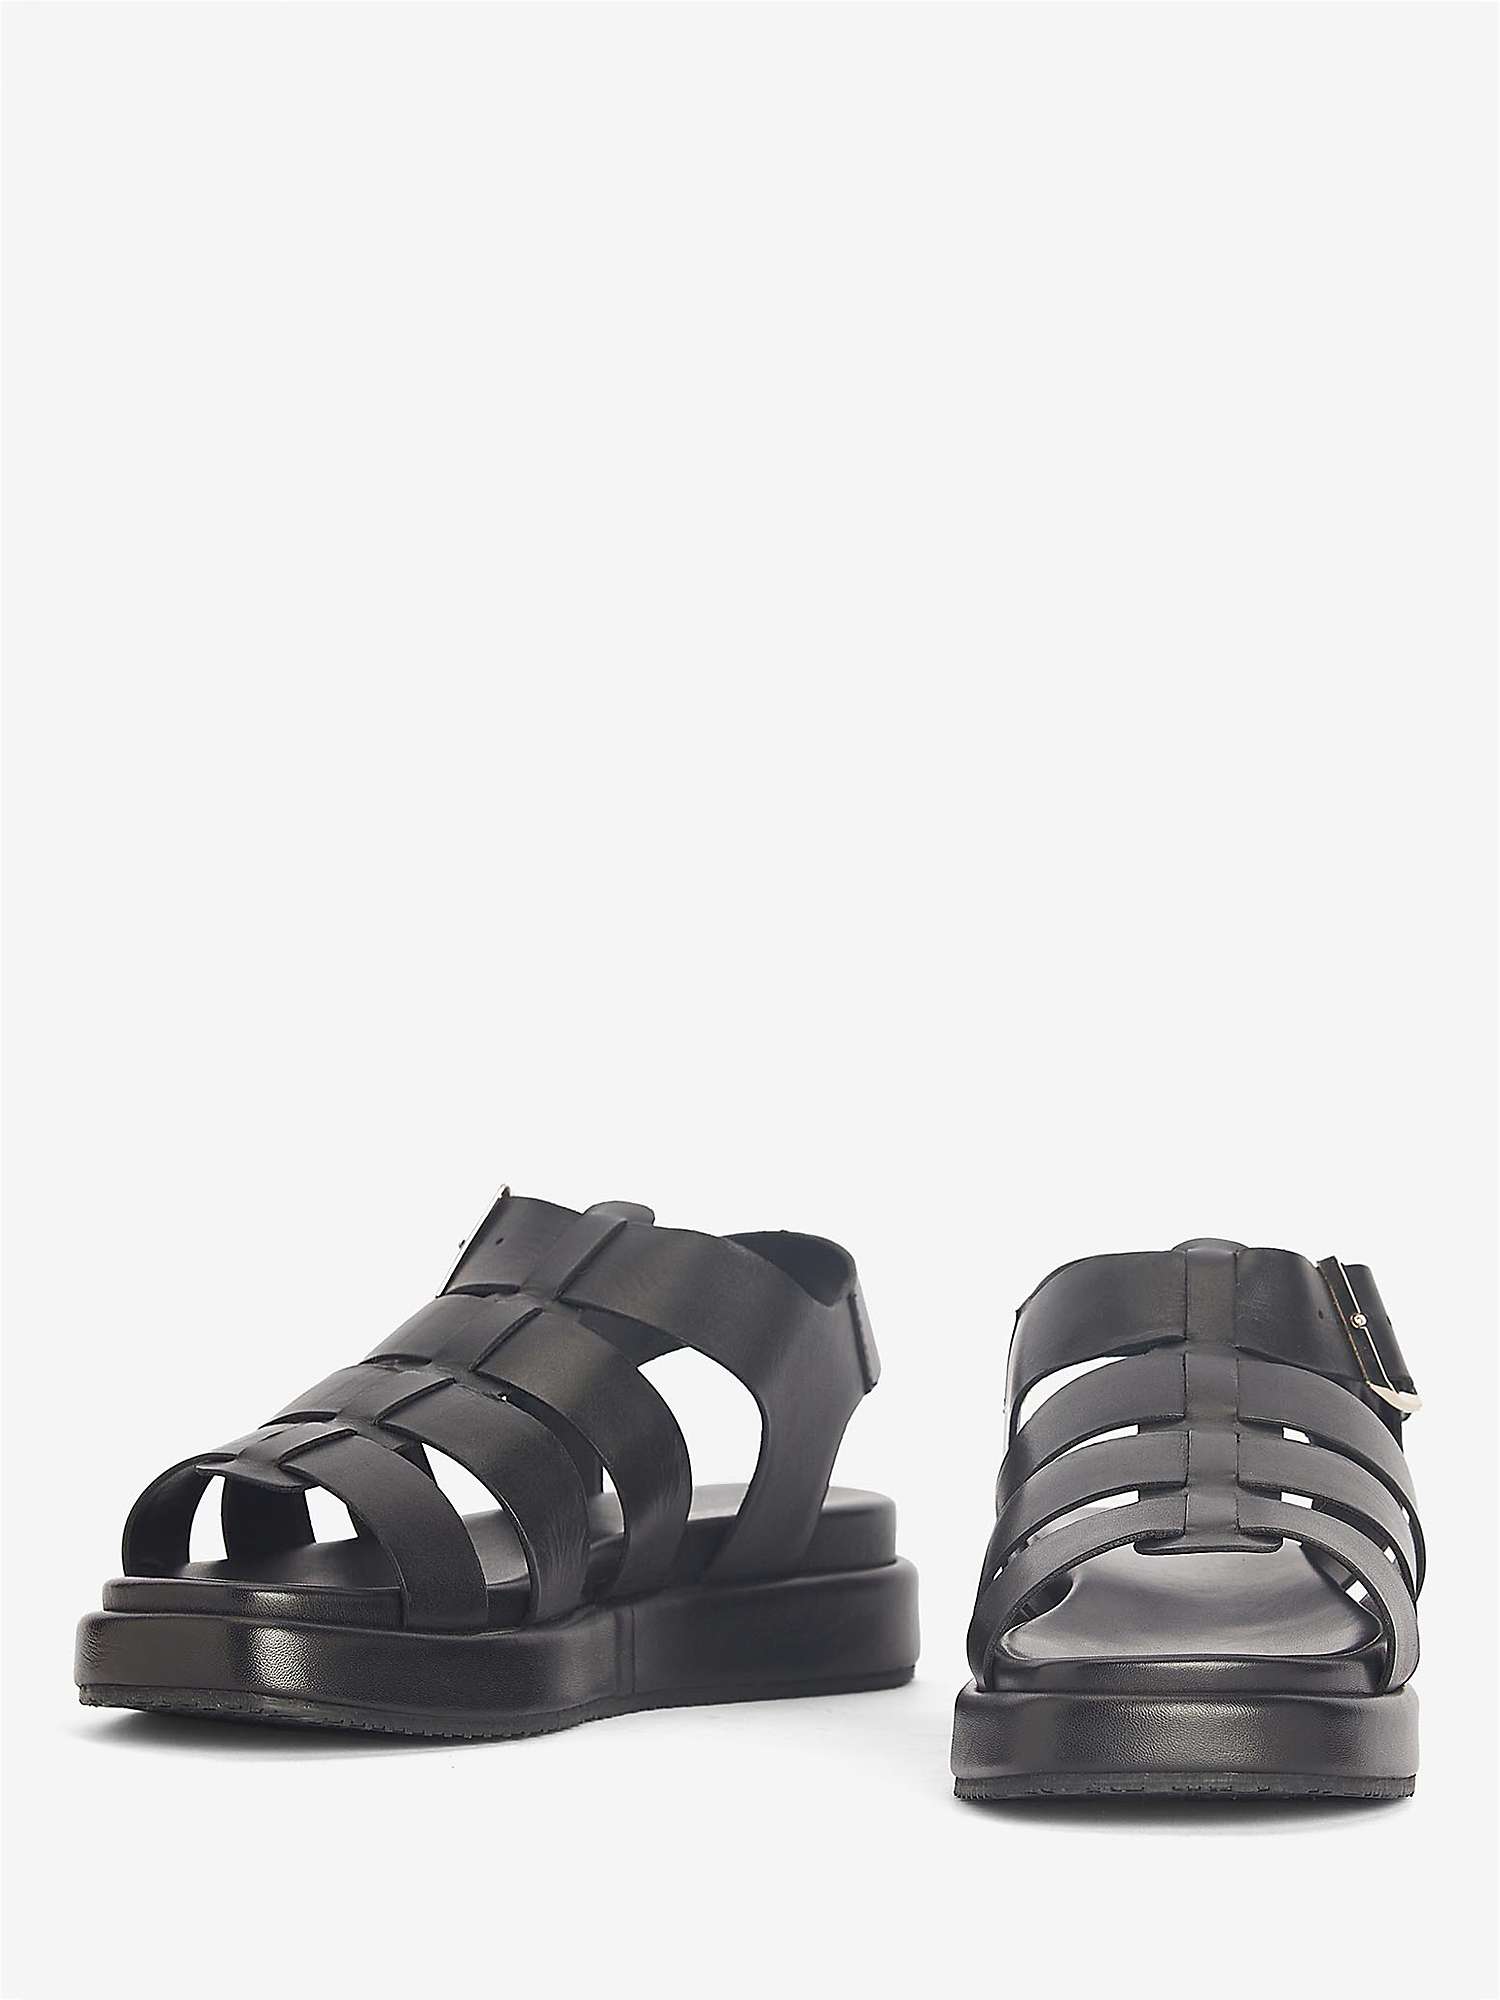 Buy Barbour Charlene Leather Sandals, Black Online at johnlewis.com